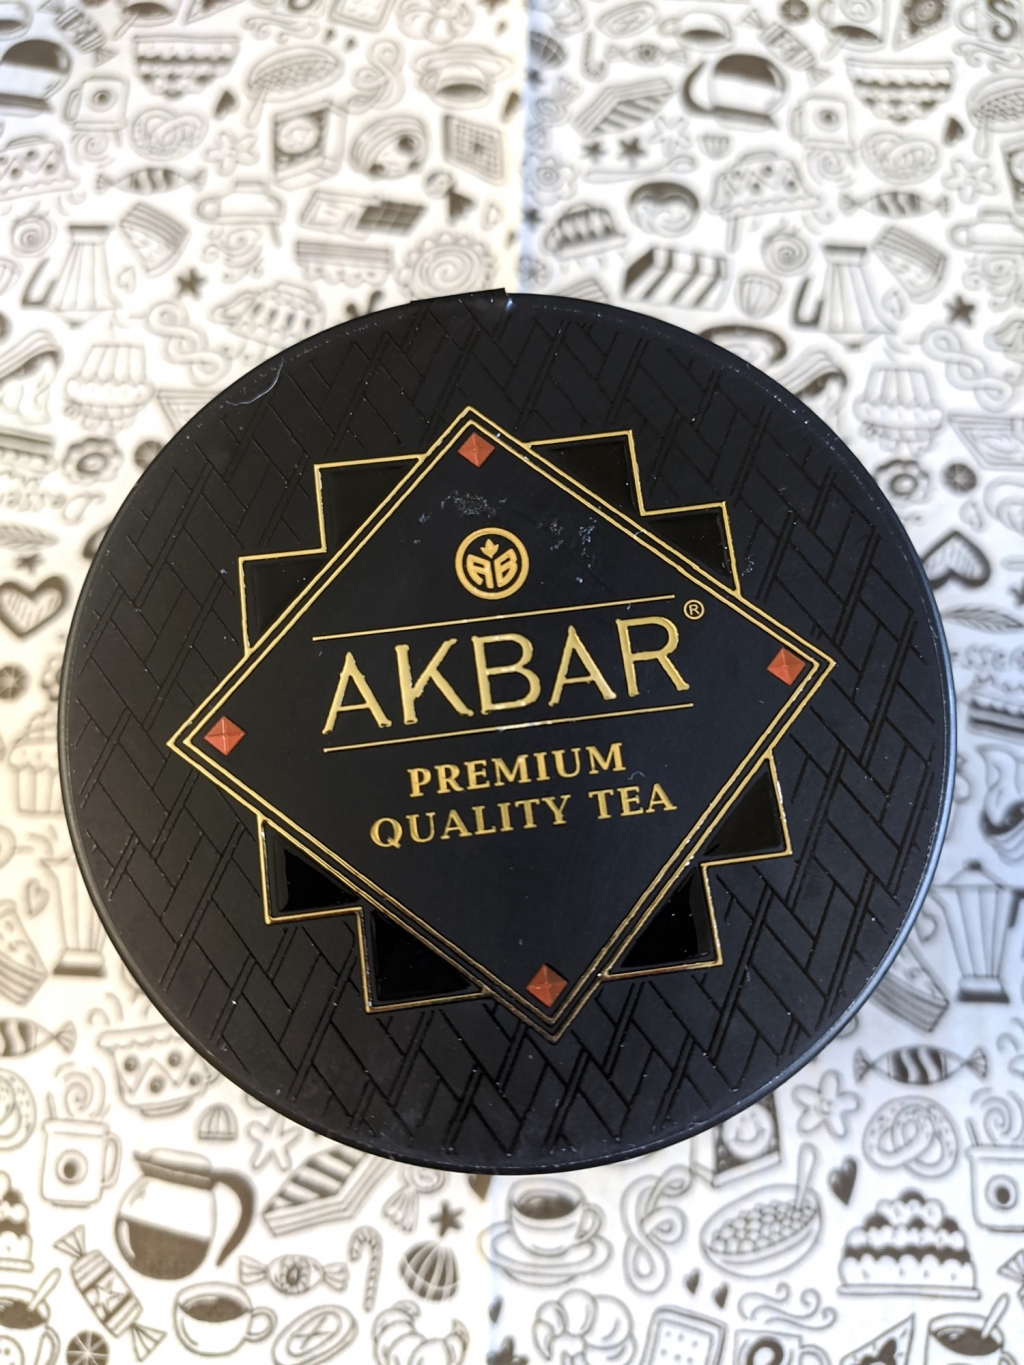 Akbar Black Gold крупнолистовой черный чай, 100 г - Хороший листовой чай от Акбар